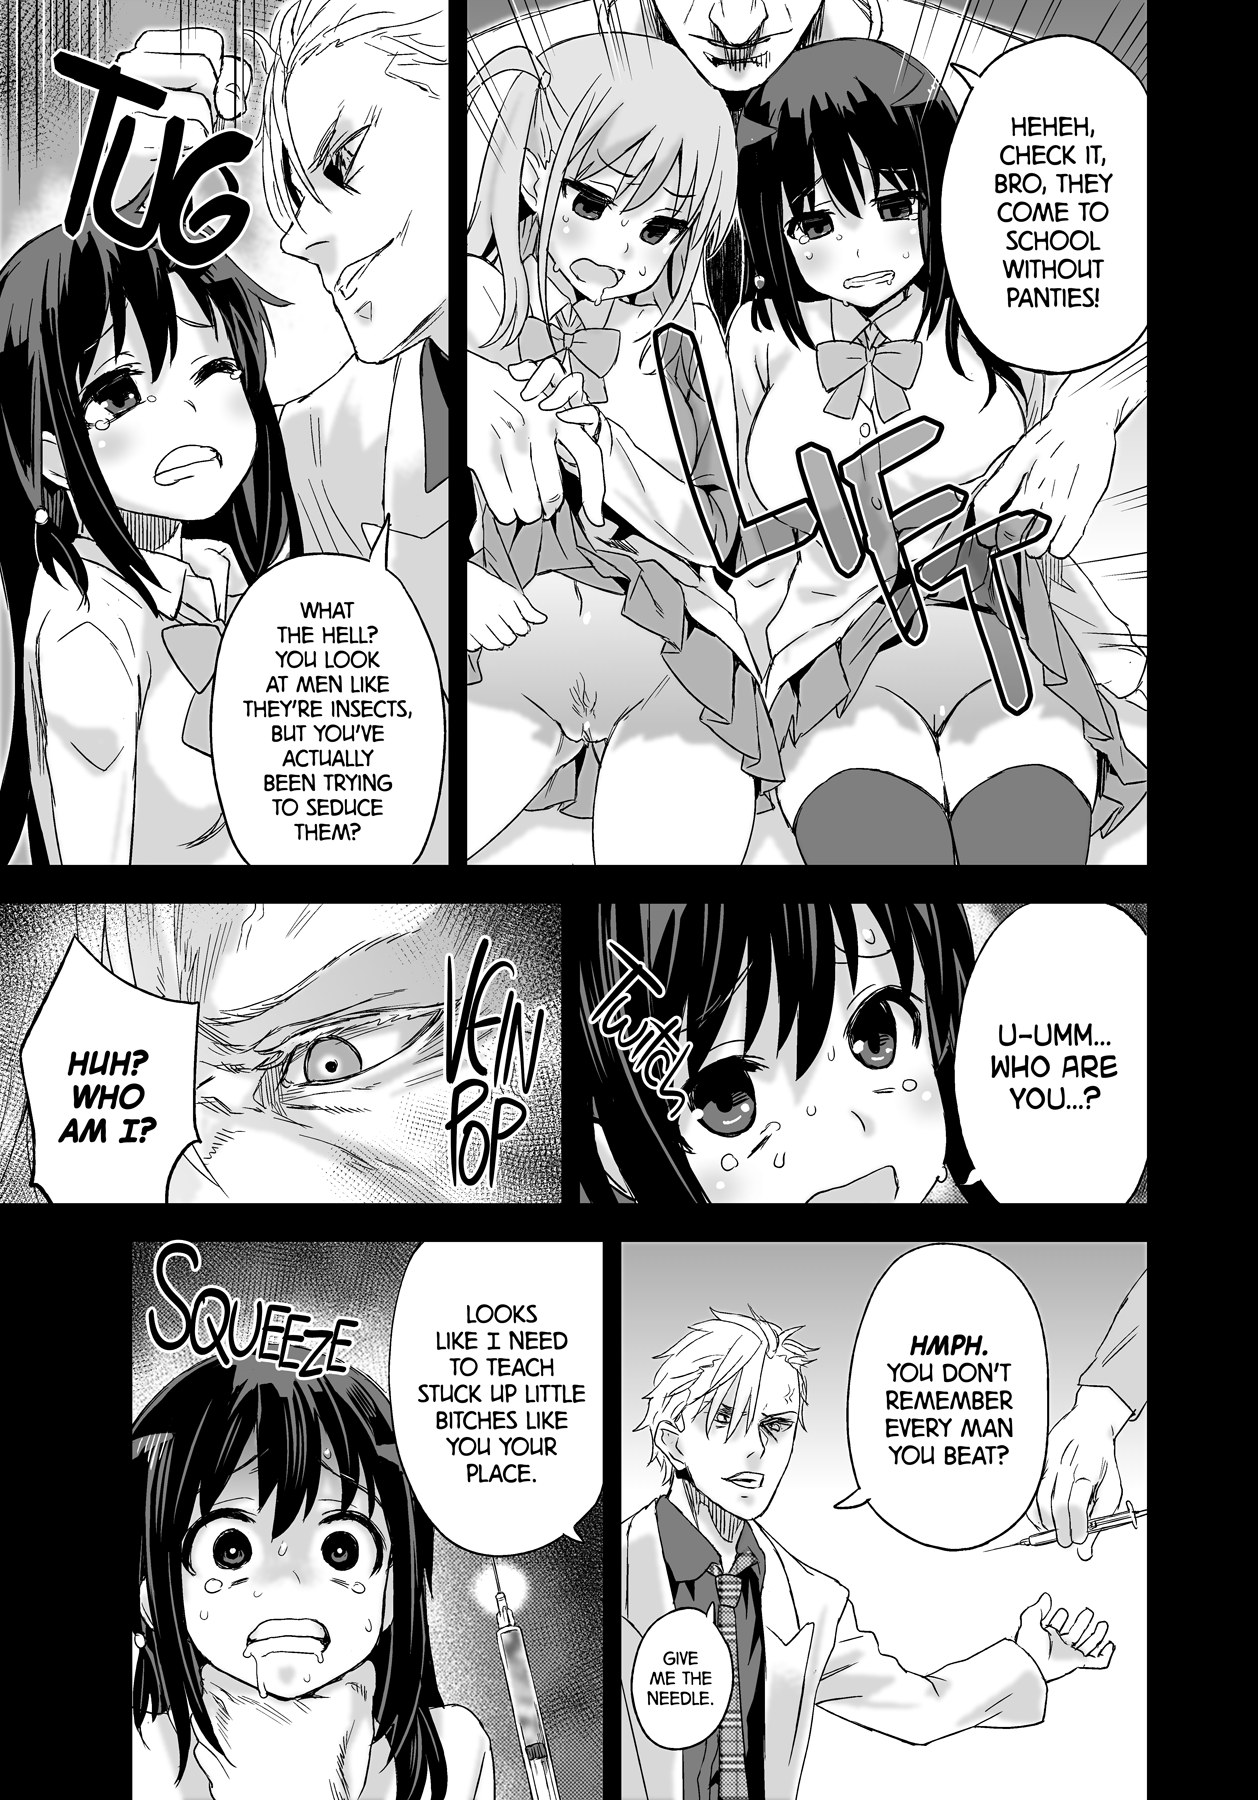 Victim Girls 13 - DRAGON SLAYER hentai manga picture 15